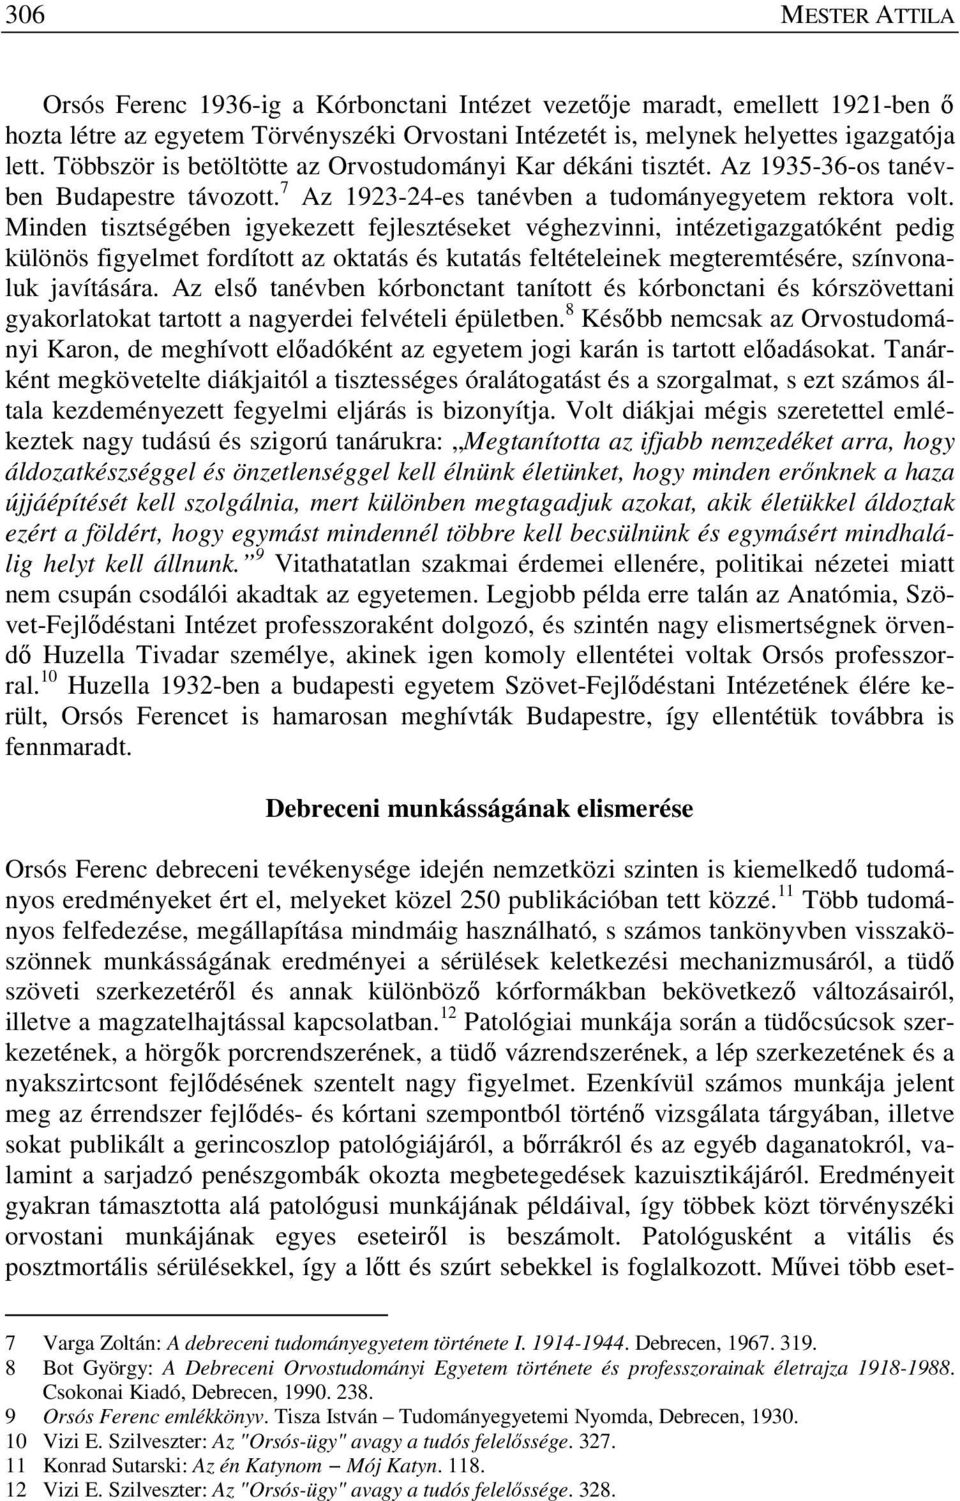 Orsós Ferenc a katyni vizsgálóbizottság debreceni tagja - PDF Free Download